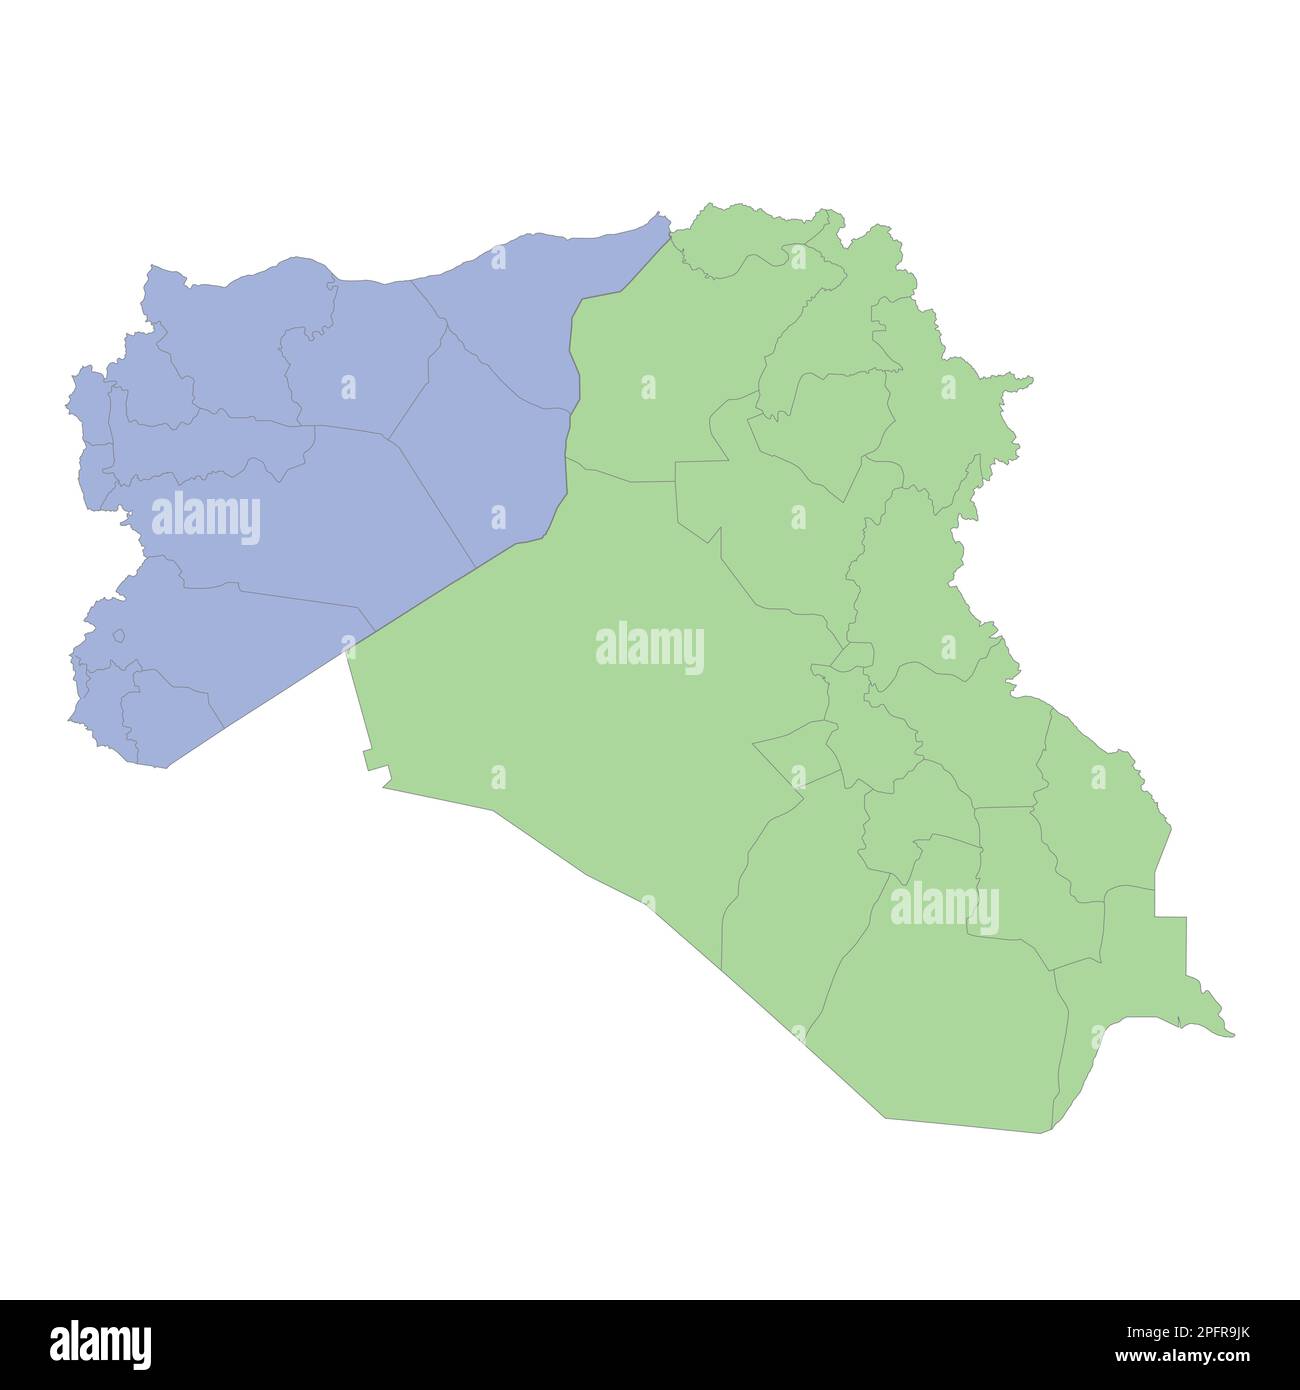 Mappa politica di alta qualità di Iraq e Siria con i confini delle regioni o province. Illustrazione vettoriale Illustrazione Vettoriale